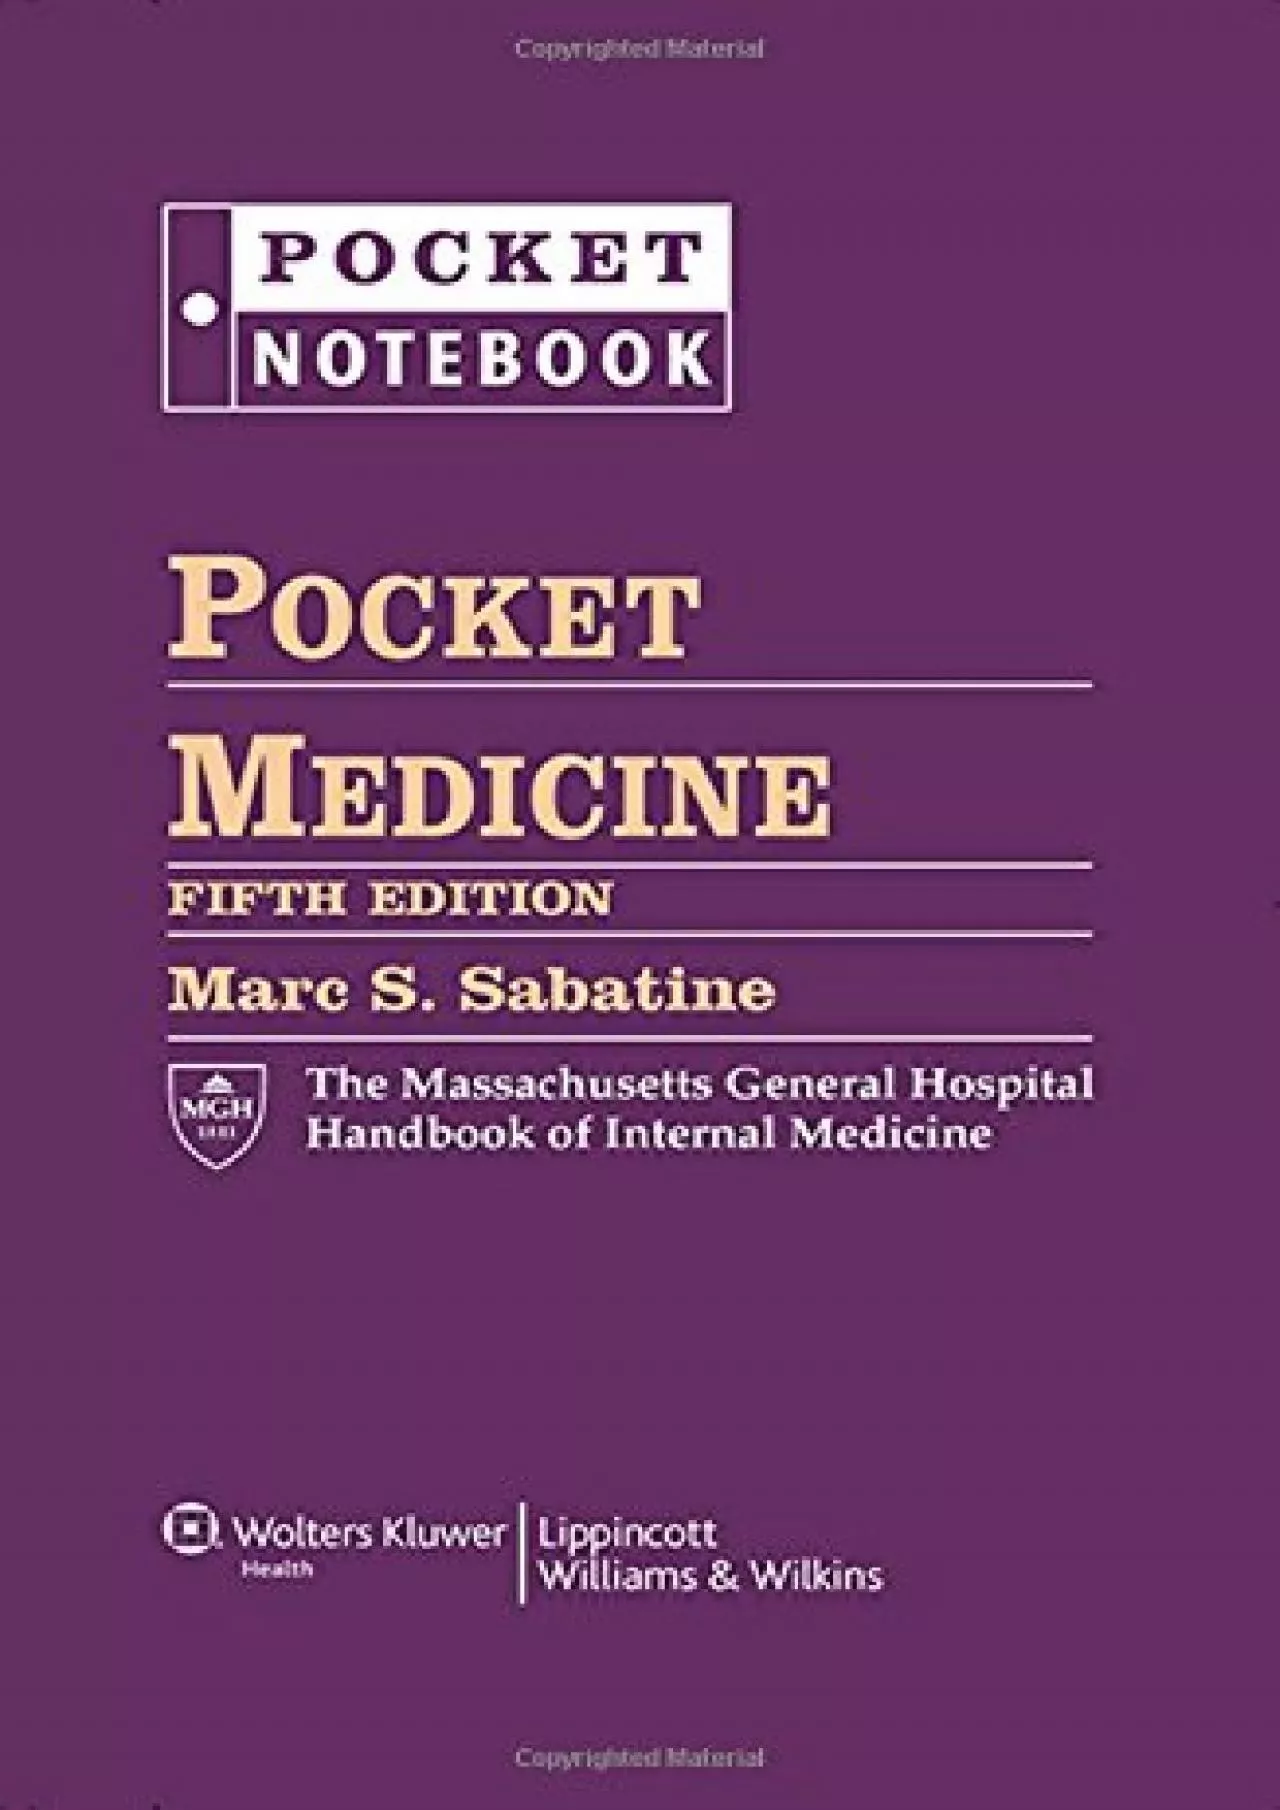 (BOOS)-Pocket Medicine: The Massachusetts General Hospital Handbook of Internal Medicine